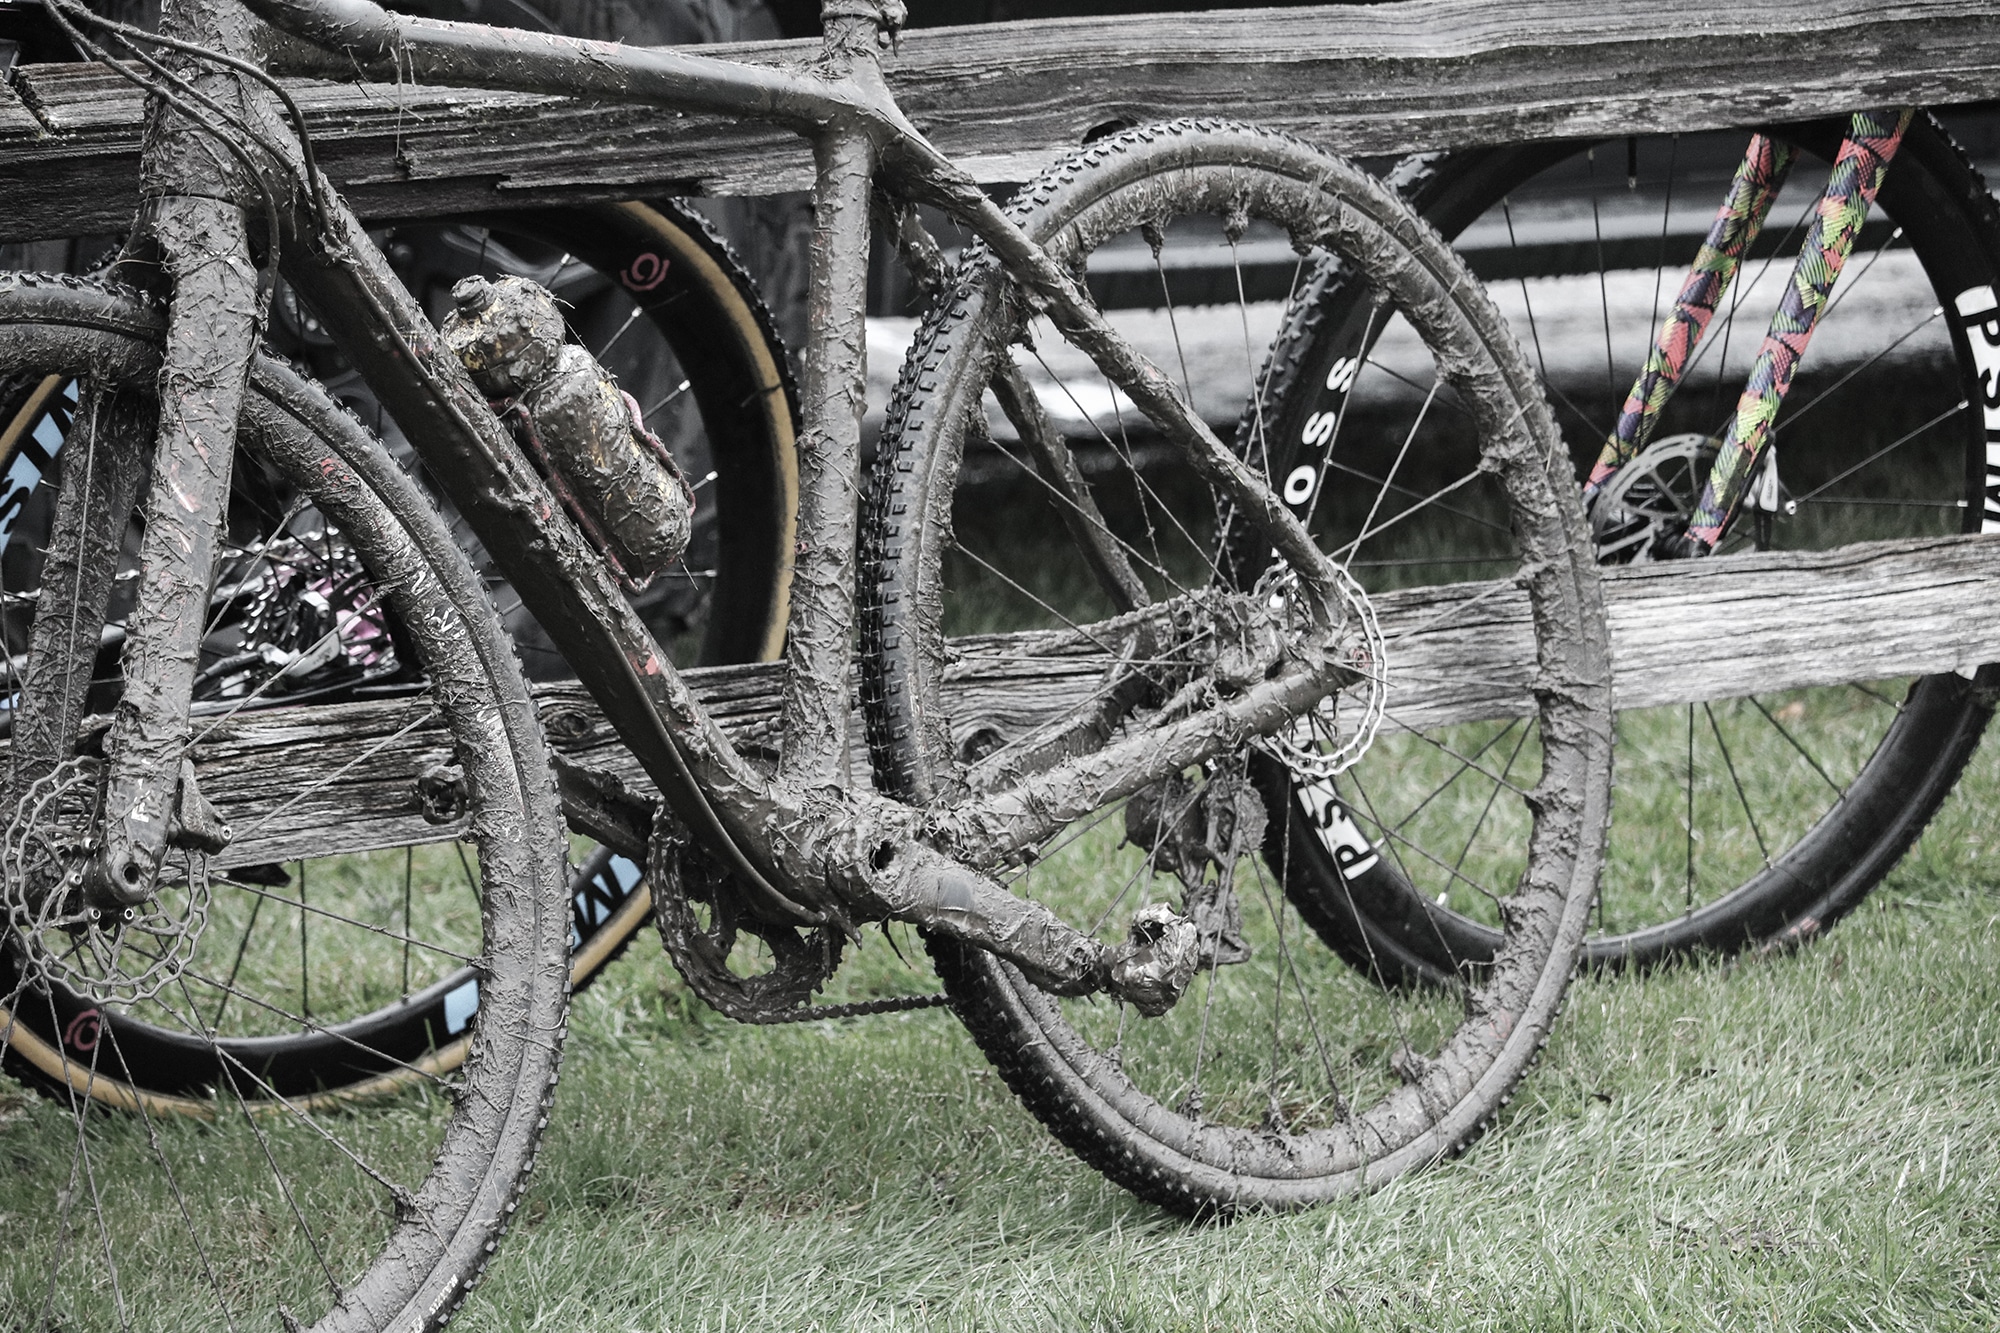 Bike covered in mud